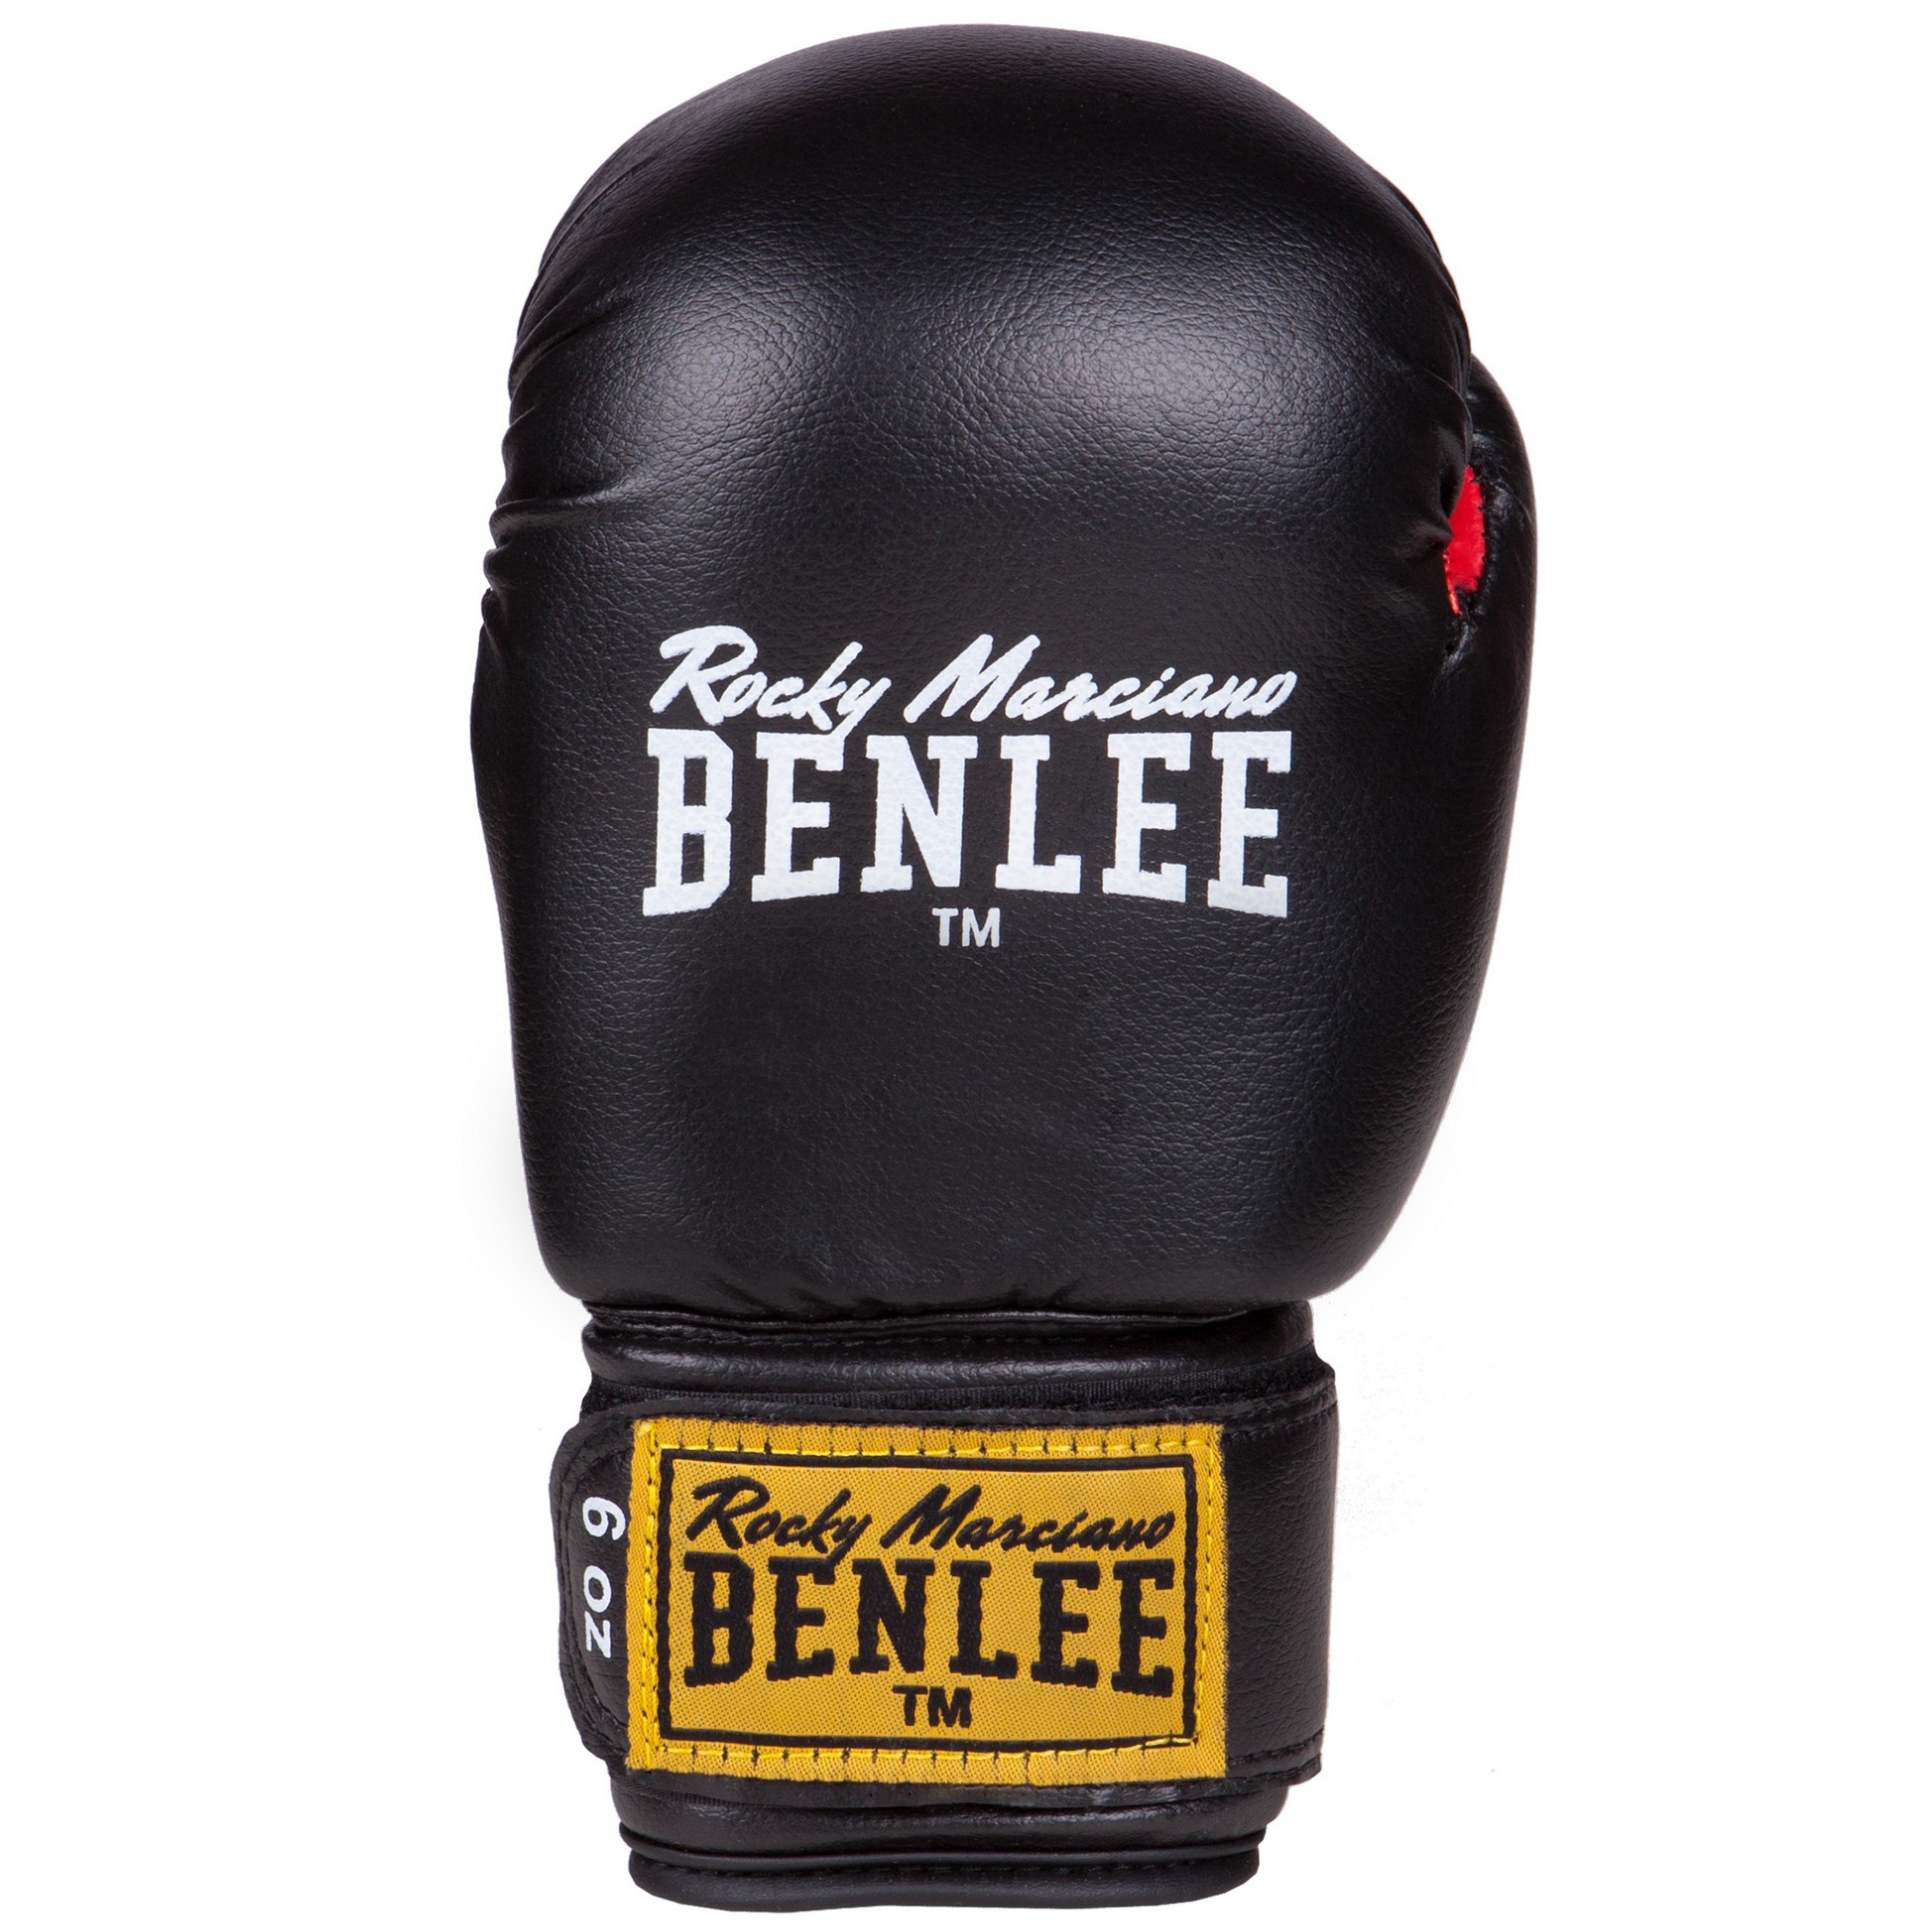 Benlee Boxing Set PUNCHY for Kids